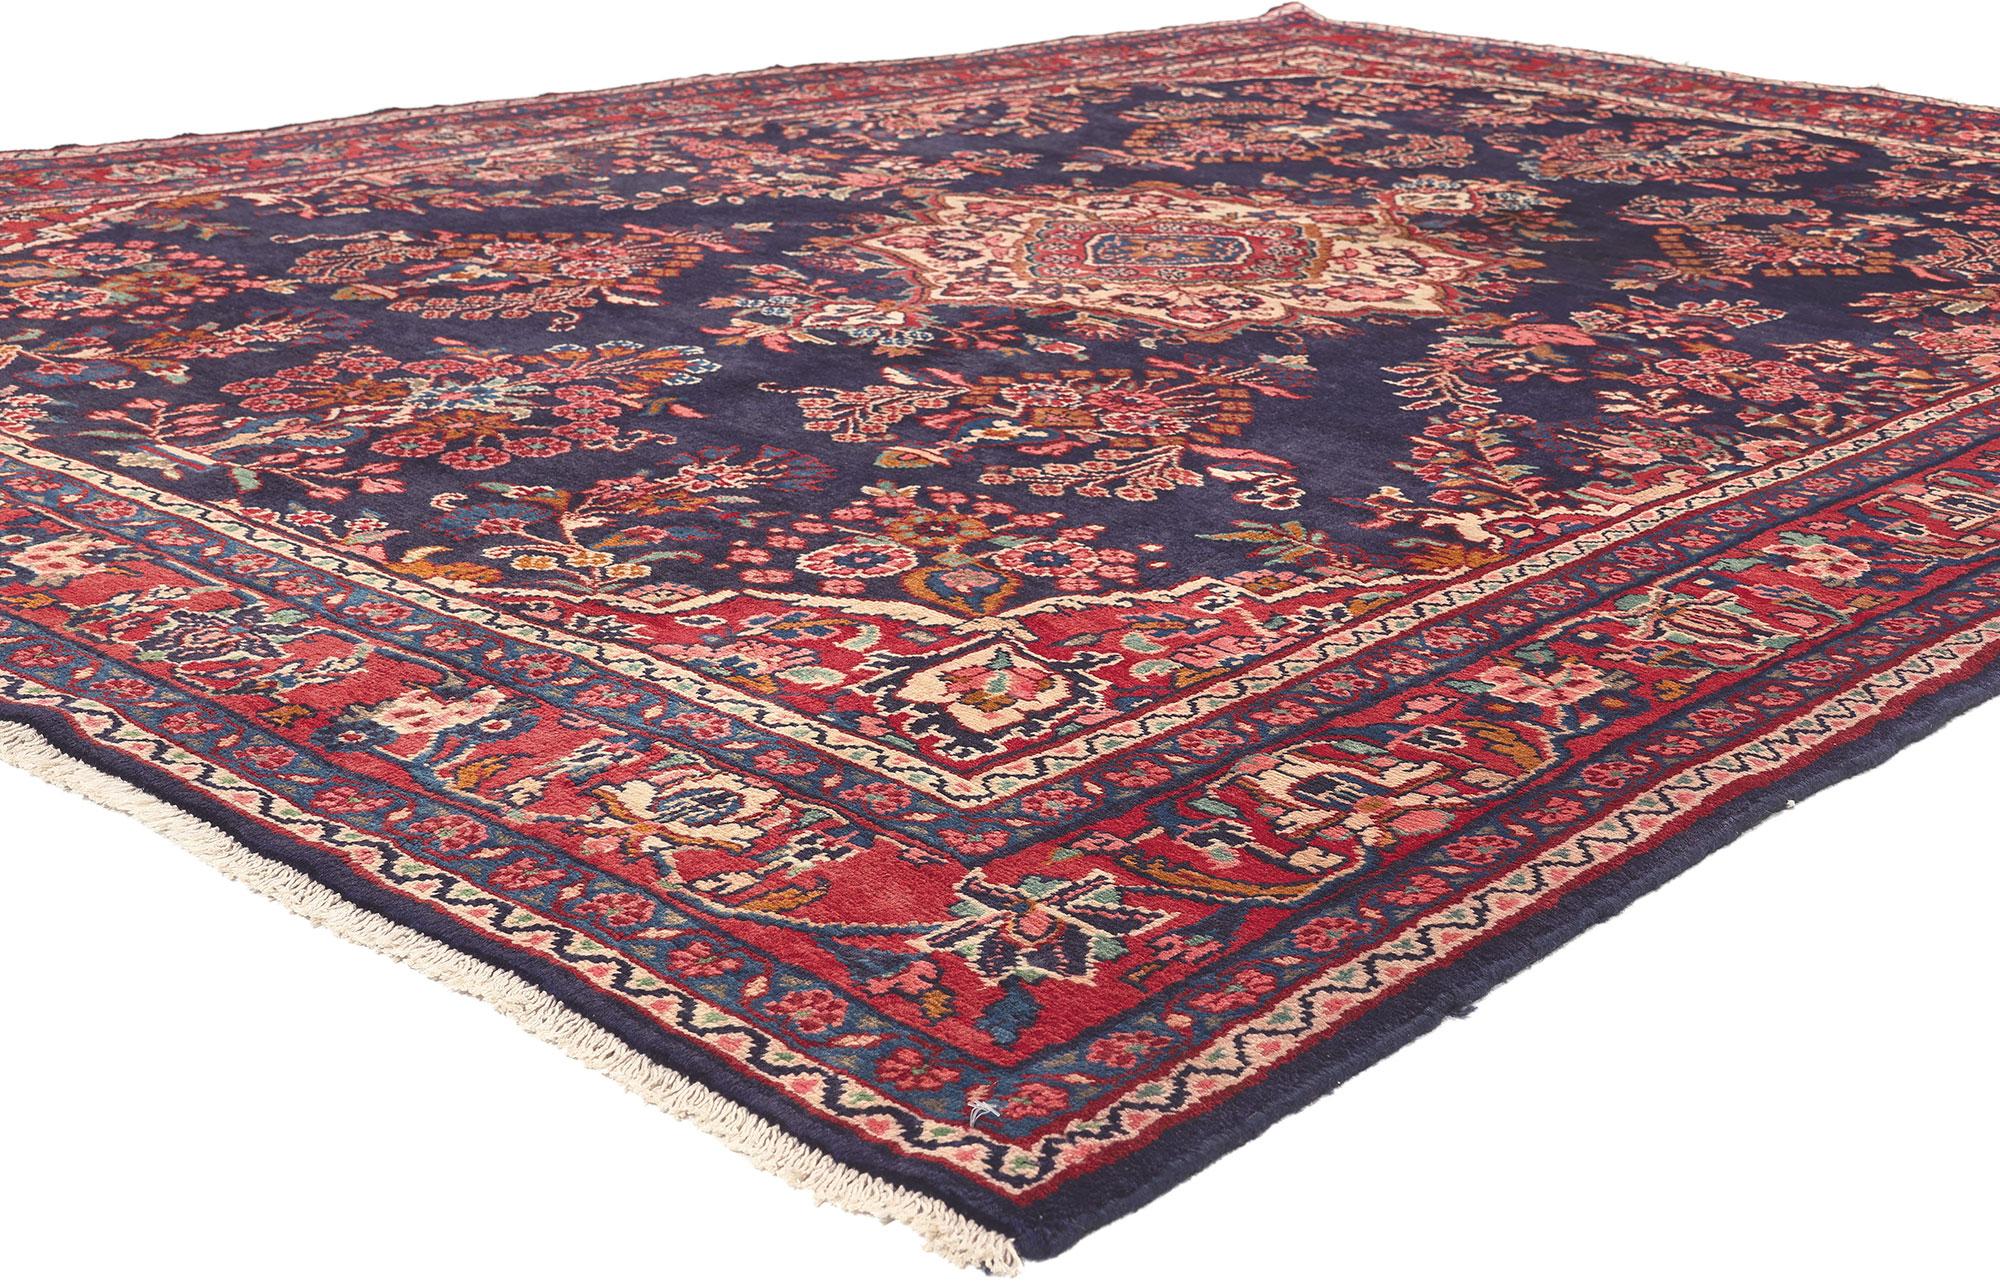 76024 Vintage Persian Mehraban Rugs, 07'02 x 10'02.
La formalité BCBG rencontre le flair patriotique dans ce tapis Mehraban Rugs vintage en laine nouée à la main. Les motifs floraux complexes du sarouk et la palette de couleurs sophistiquée de cette